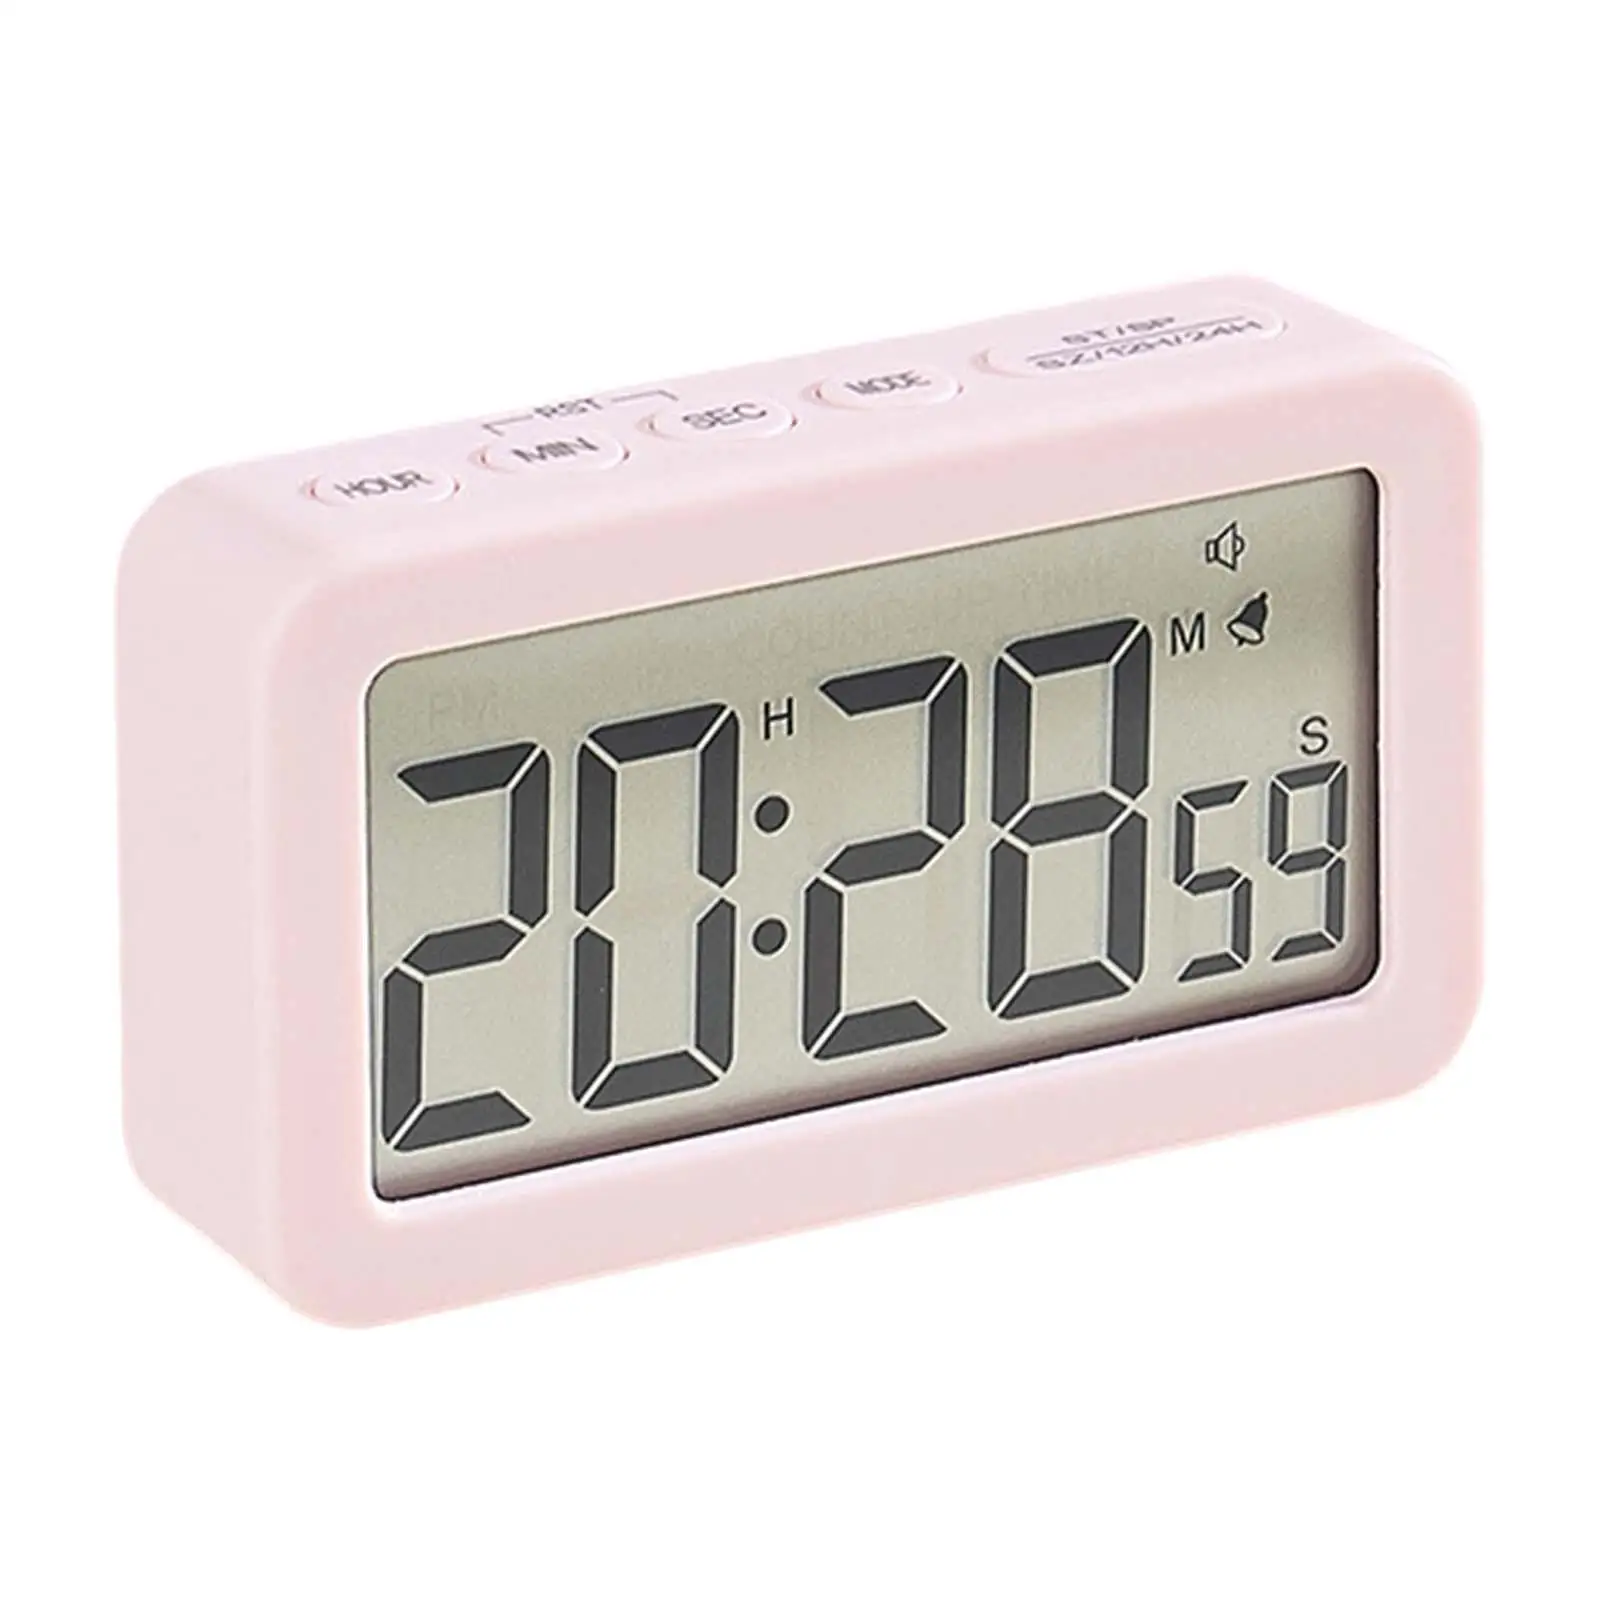 Digital Clock Large Display Easy Operation Desk Clocks Count up & Down Timer Bedside Clocks for Kids Adults Beside Bedroom